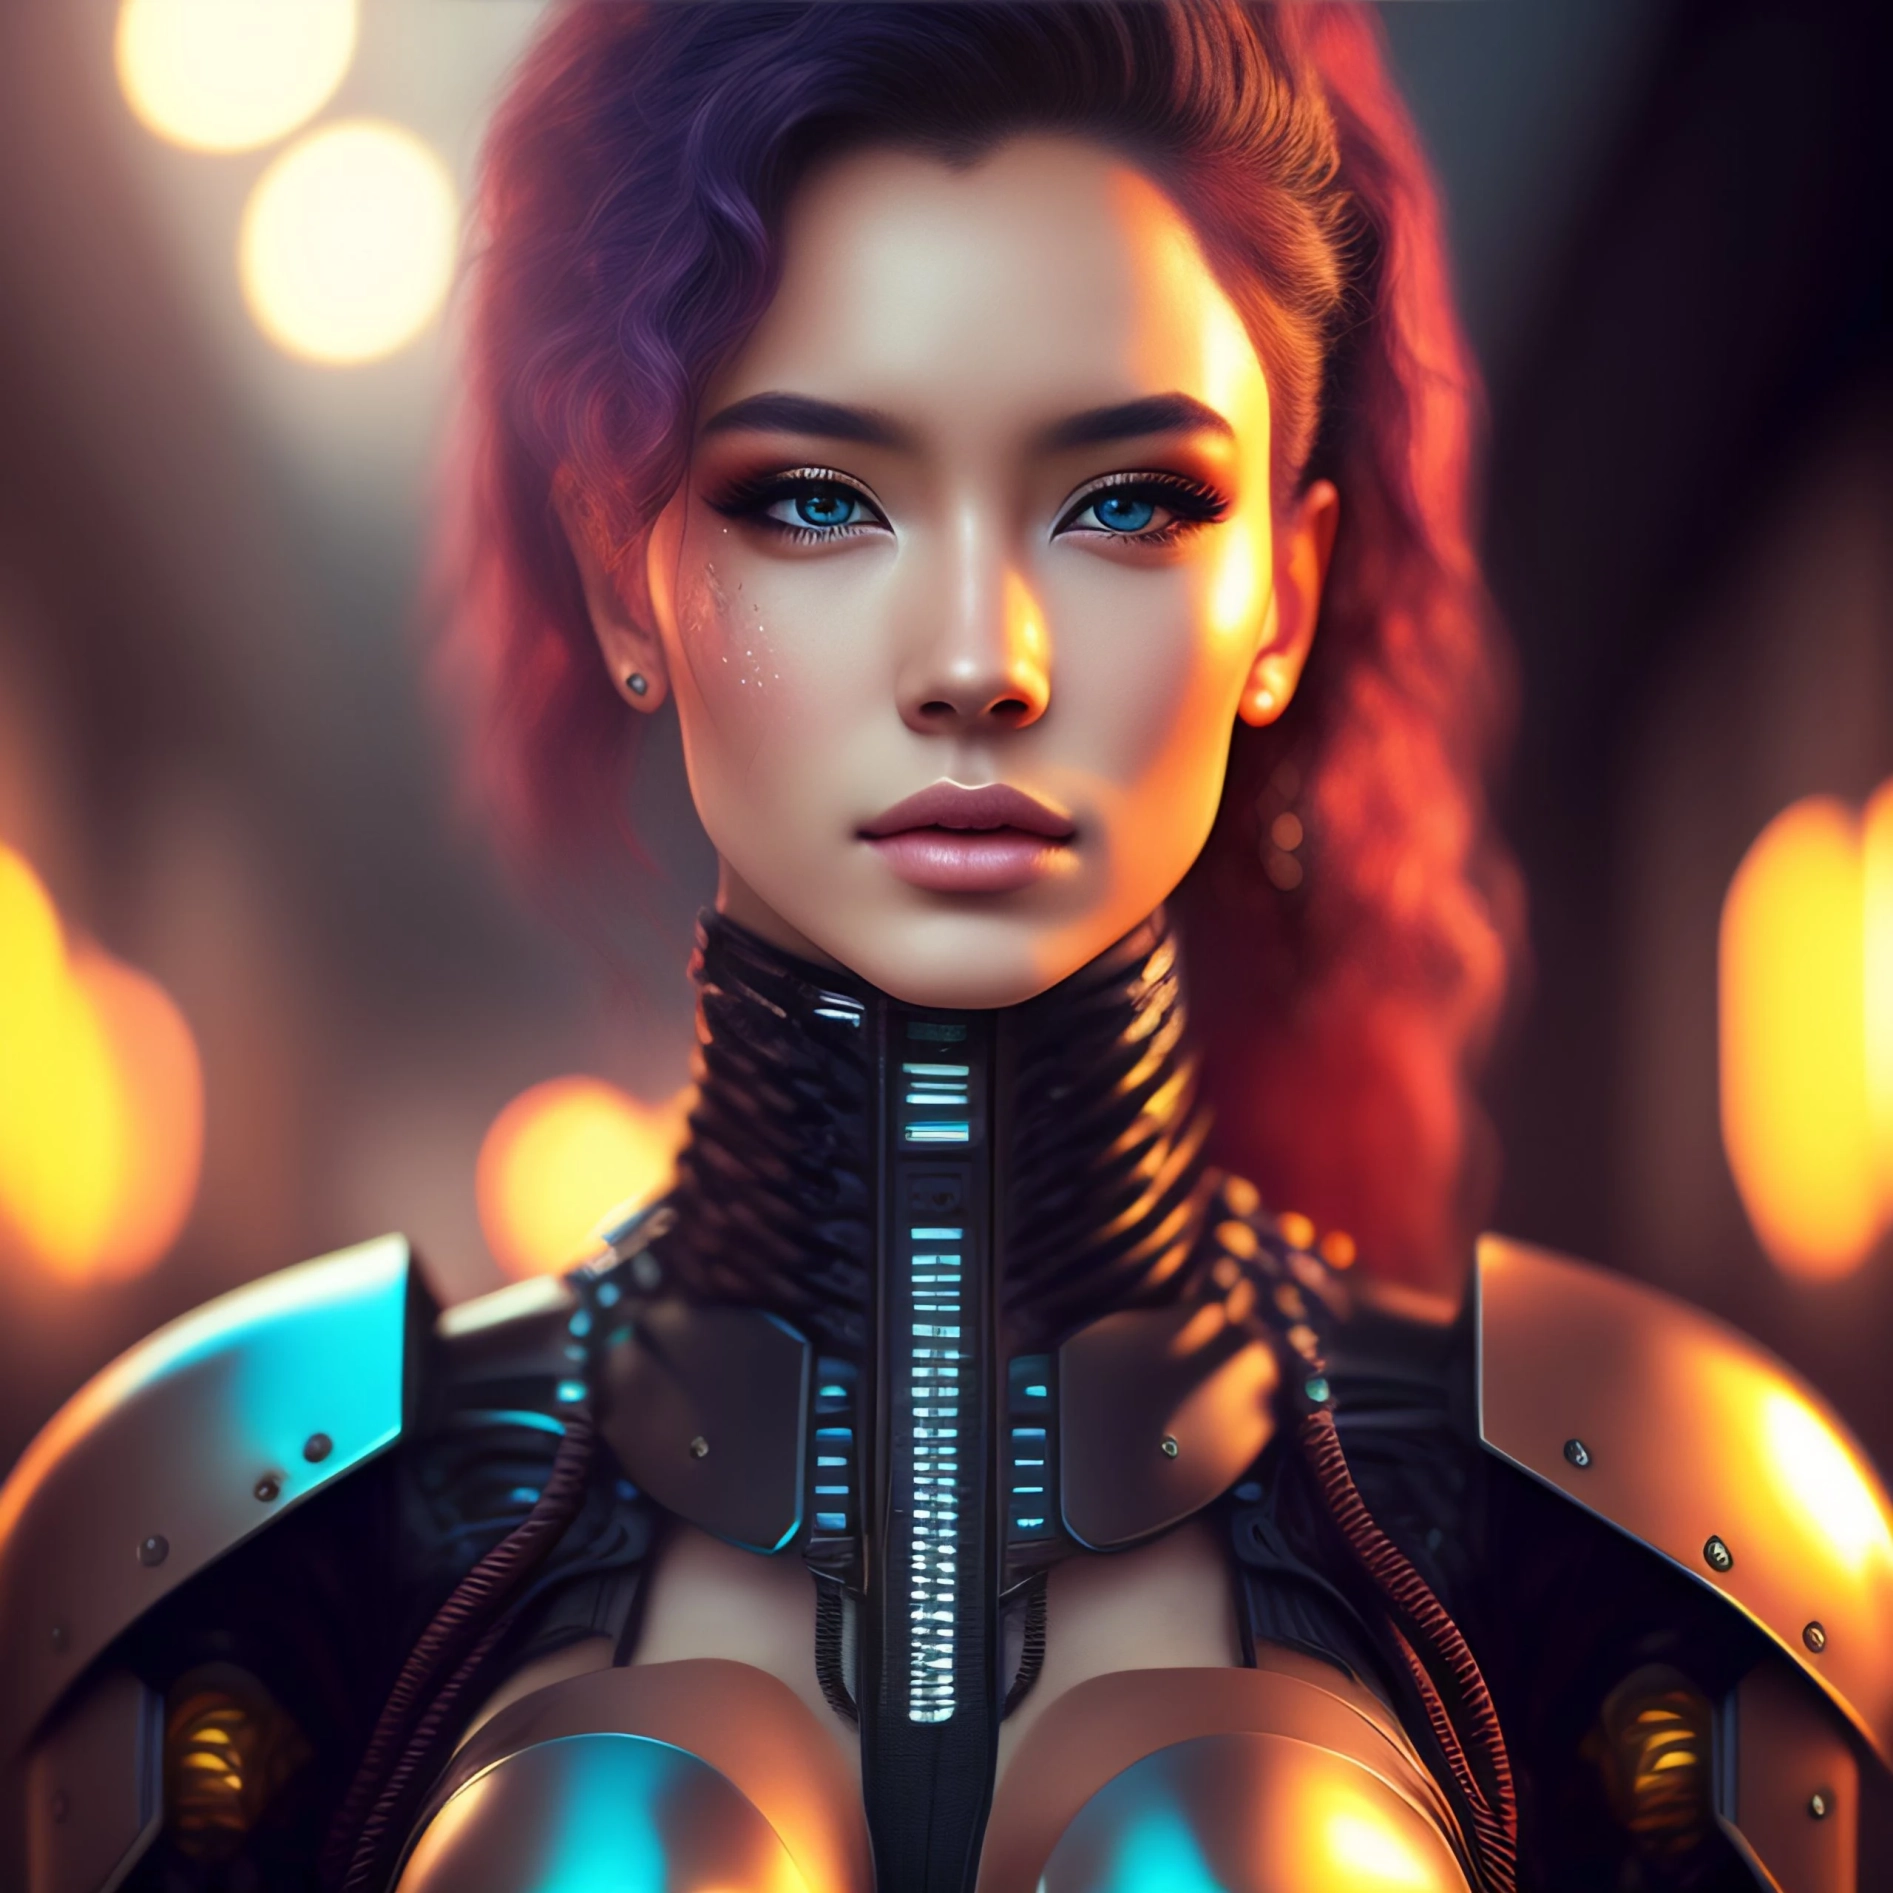 Cyberpunk-Charakterdesign